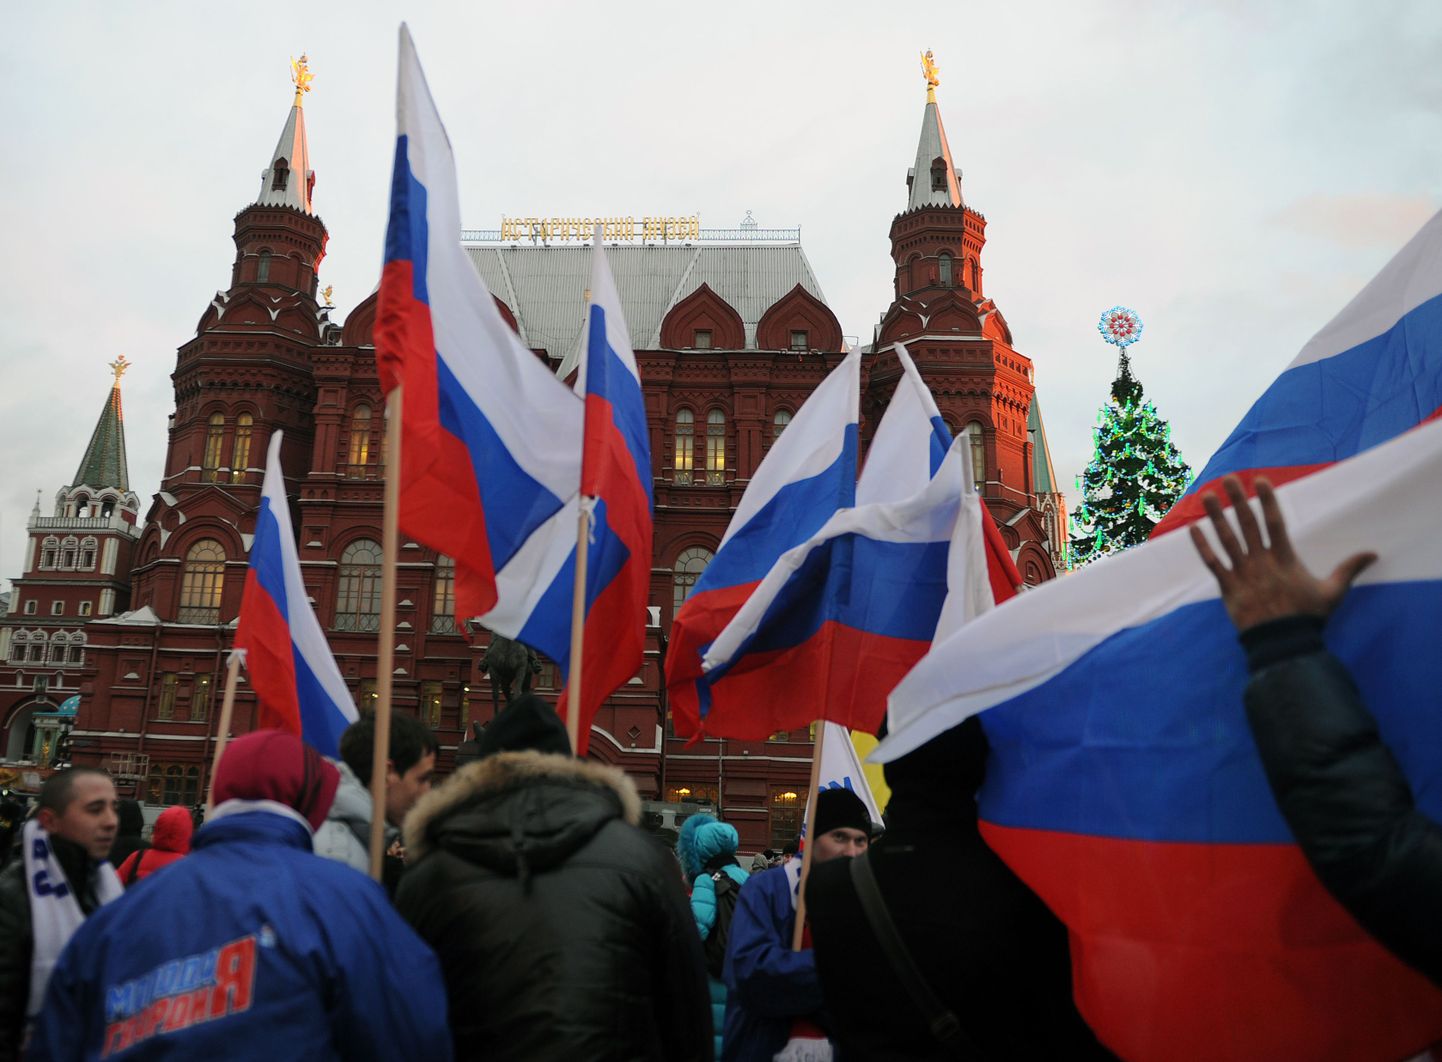 Kremli-meelsed noored on väljendanud oma toetust võimudele rahvakogunemistega.